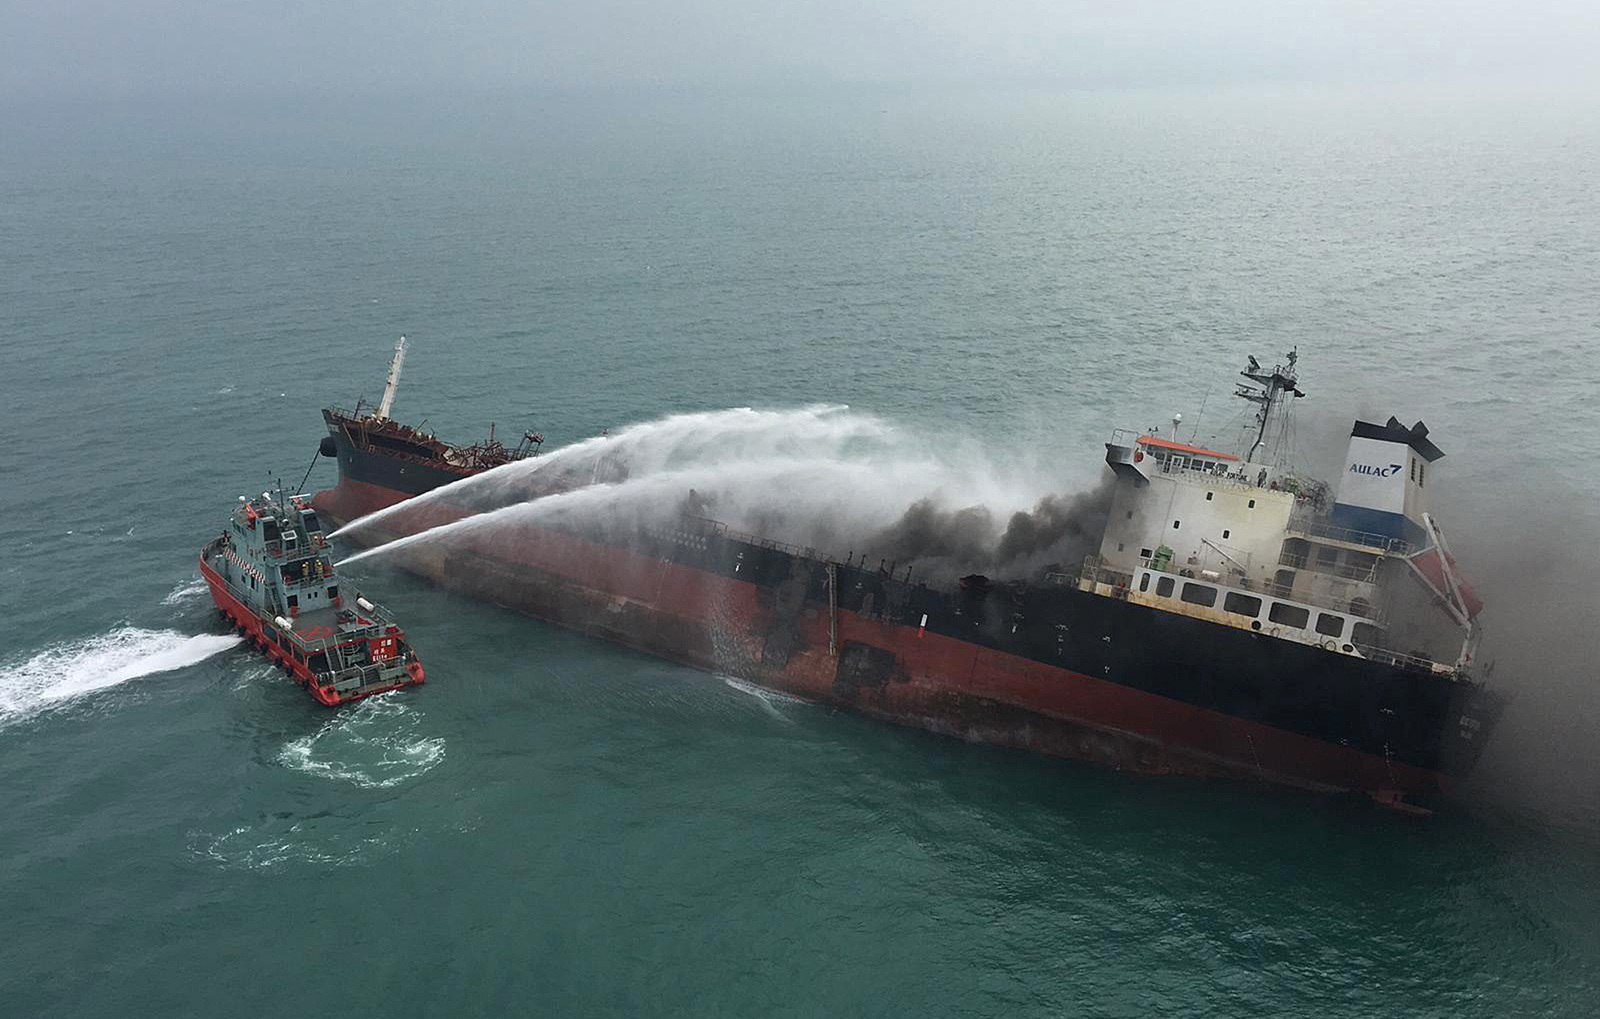 Siniestro. El incendio en el buque petrolero de 140 metros de largo, que transportaba queroseno, se extinguió en la tarde. (AP)